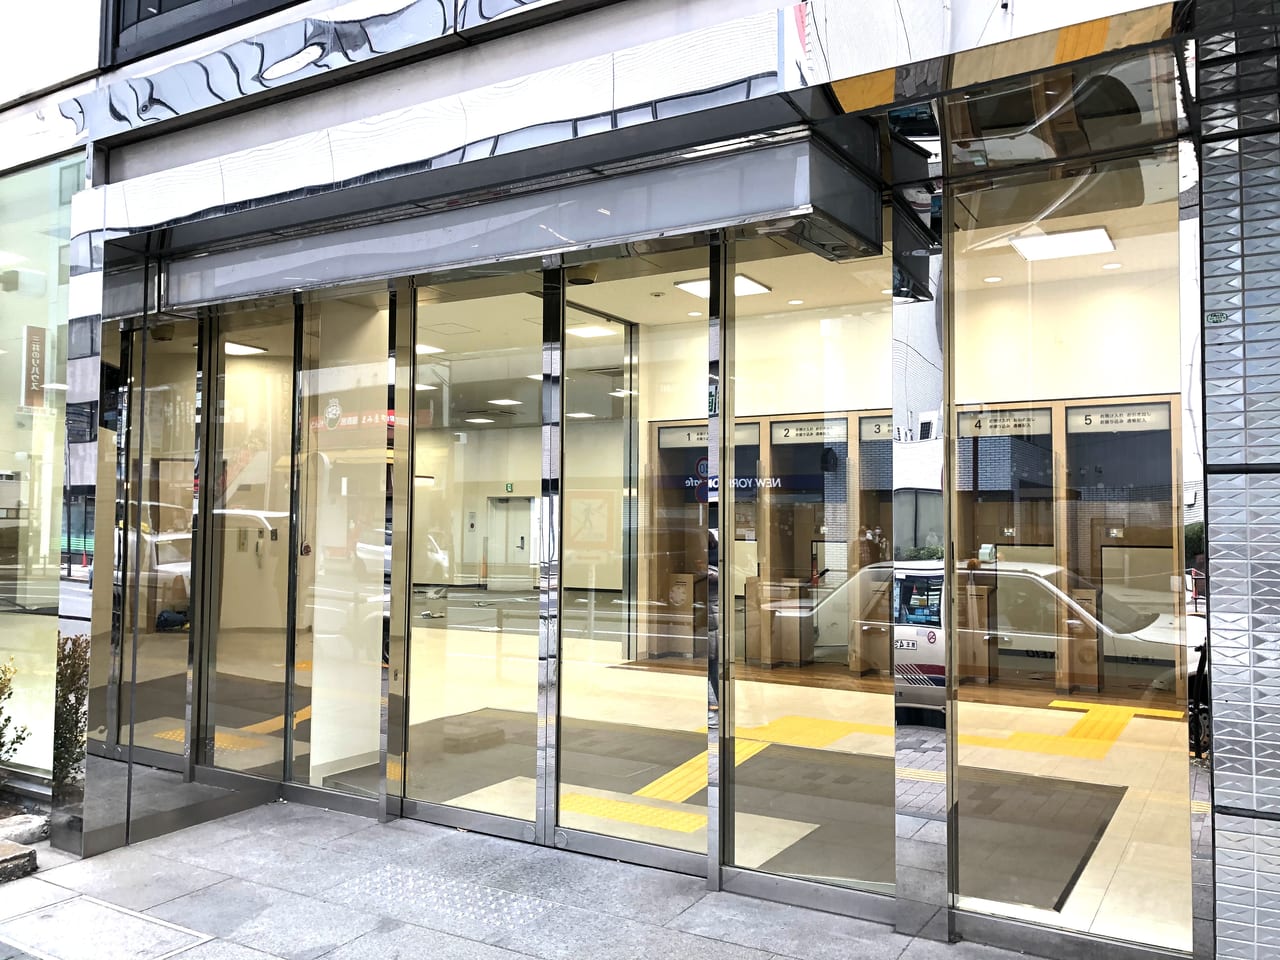 横浜銀行